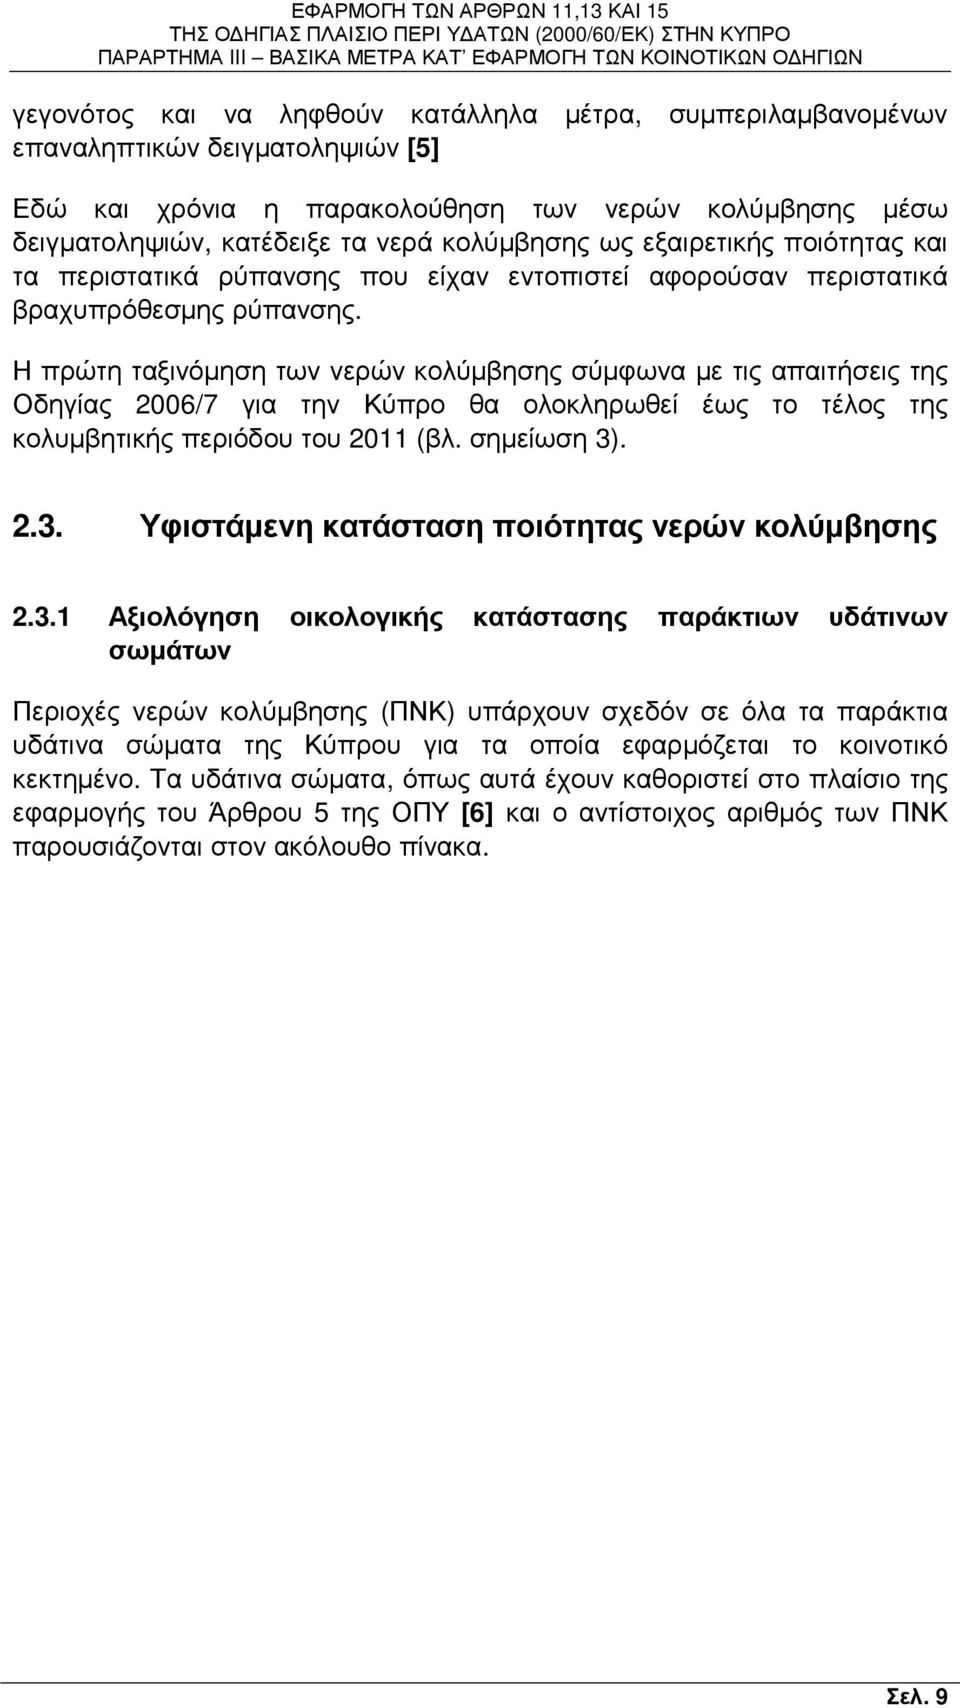 Η πρώτη ταξινόµηση των νερών κολύµβησης σύµφωνα µε τις απαιτήσεις της Οδηγίας 2006/7 για την Κύπρο θα ολοκληρωθεί έως το τέλος της κολυµβητικής περιόδου του 2011 (βλ. σηµείωση 3)